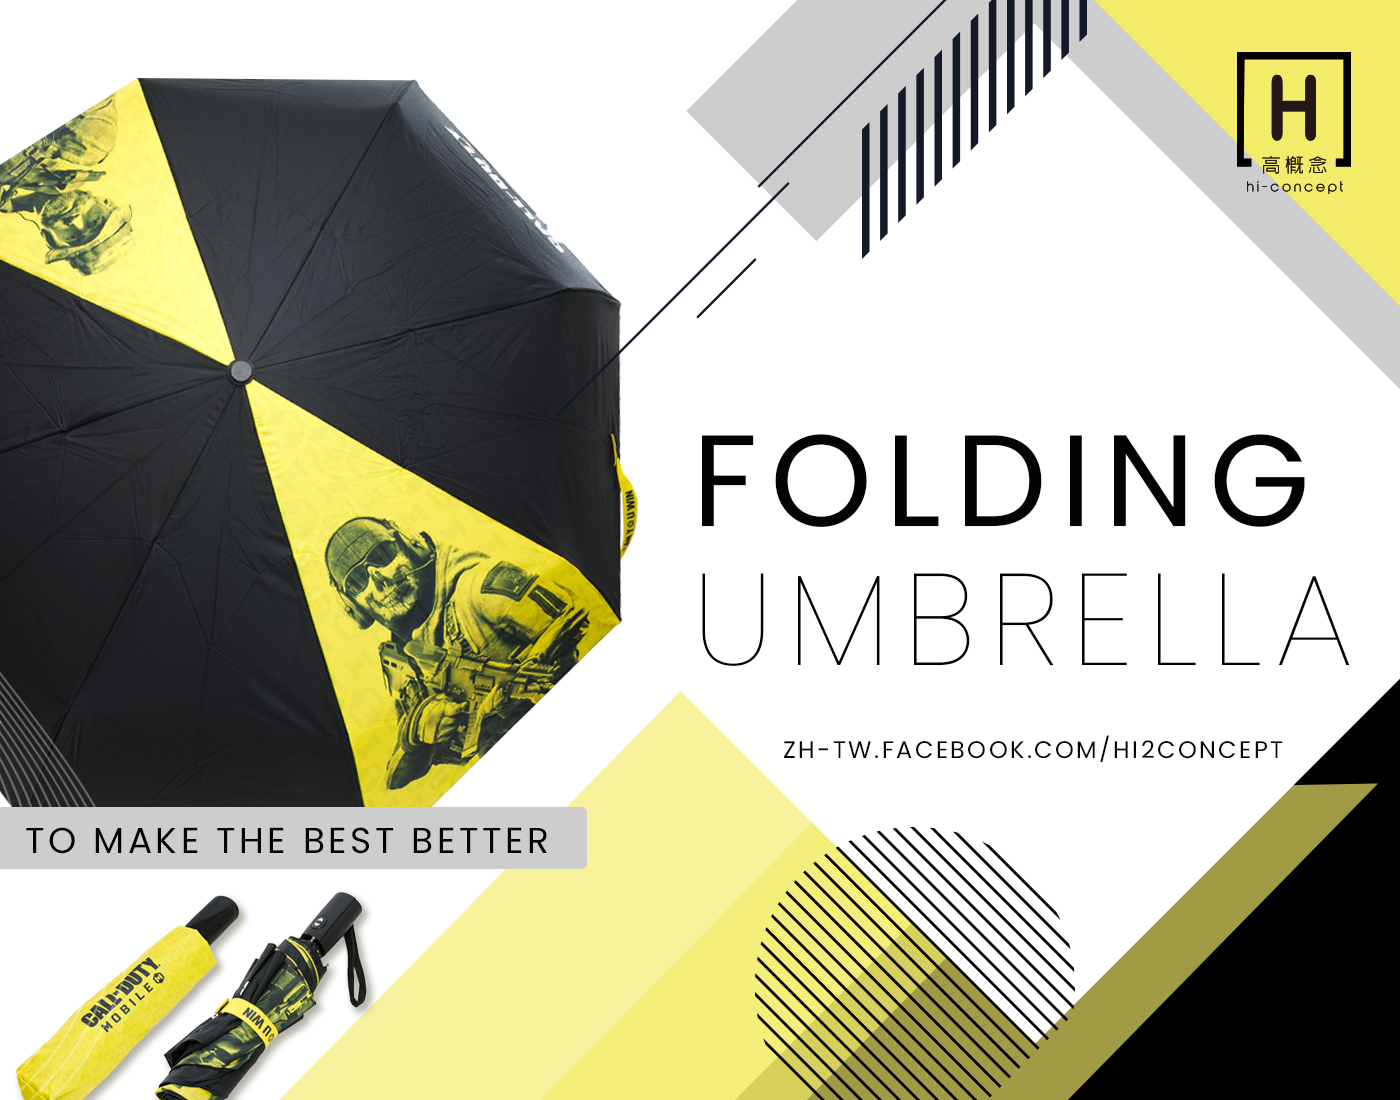 客製摺疊傘 絕對是玩家們晴天雨天的首選裝備，千萬不可錯過